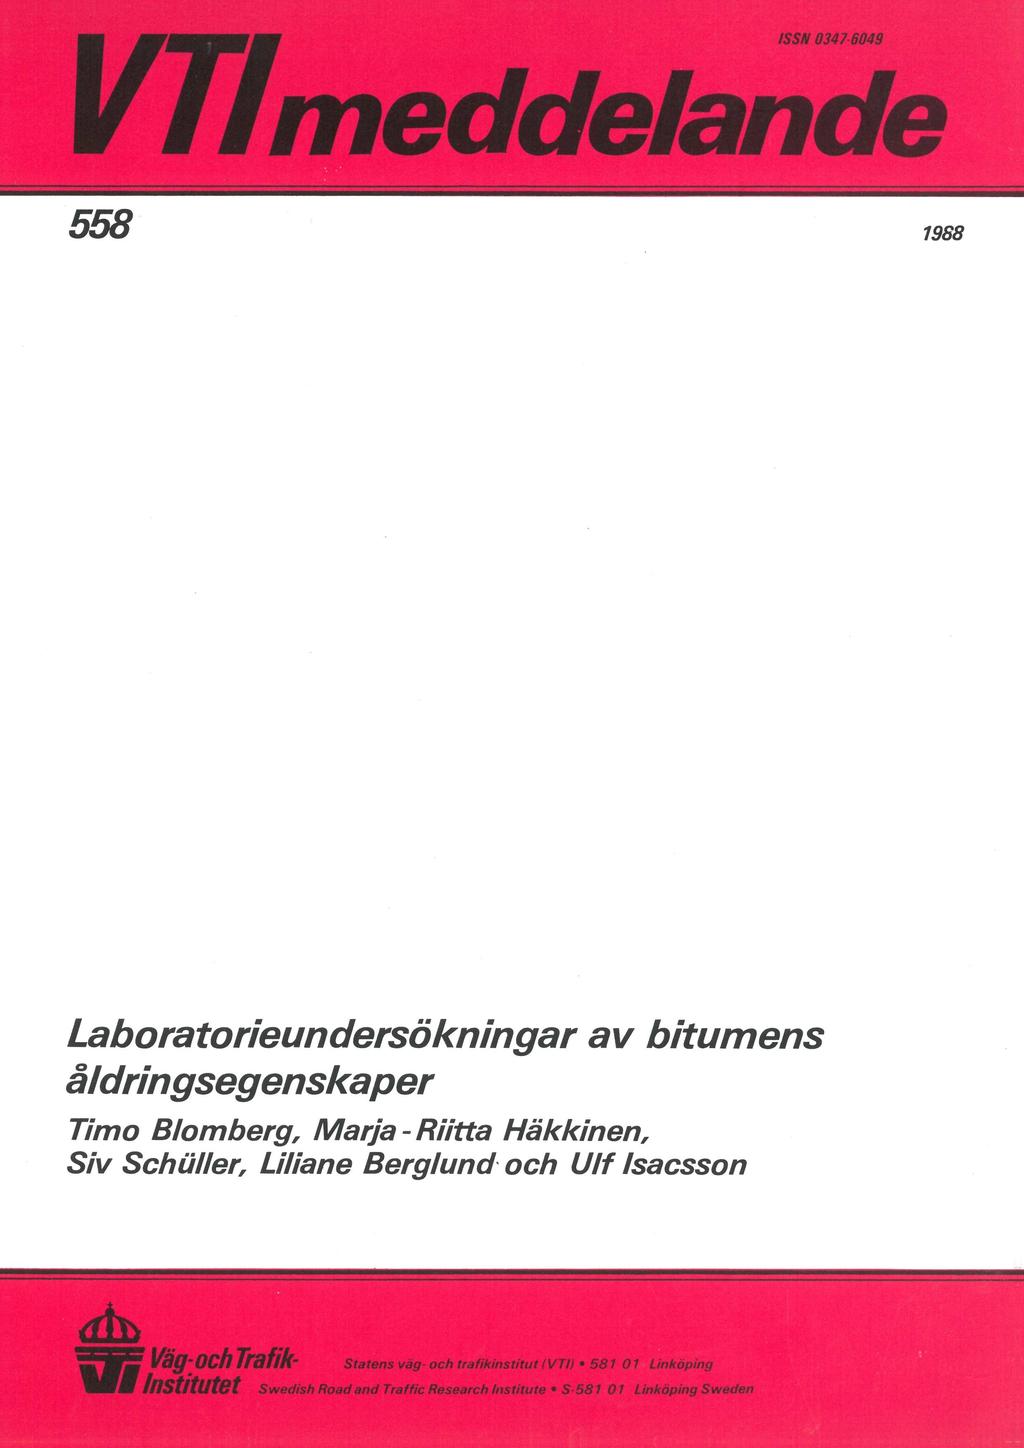 ISSN 0347-6049 ; Vf i 558 * 1968 Laboratorieundersökningar av bitumens åldringsegenskaper Timo Blomberg, Marja - Riitta Häkkinen, Siv Schäller, Liliane Berglund och